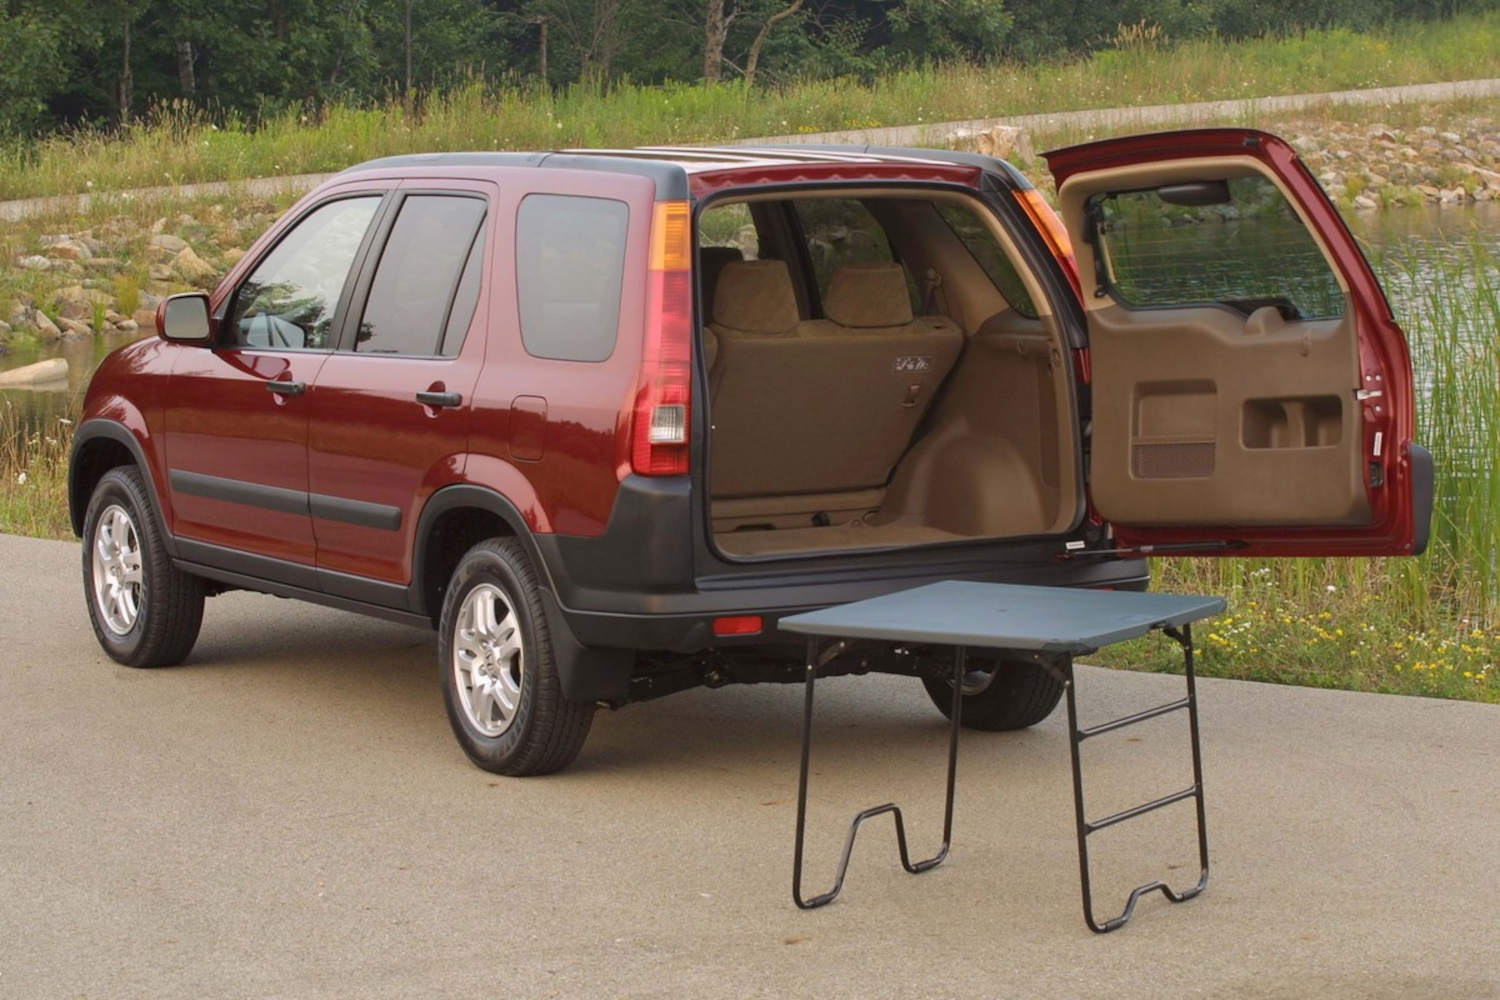 This Honda SUV had a picnic table